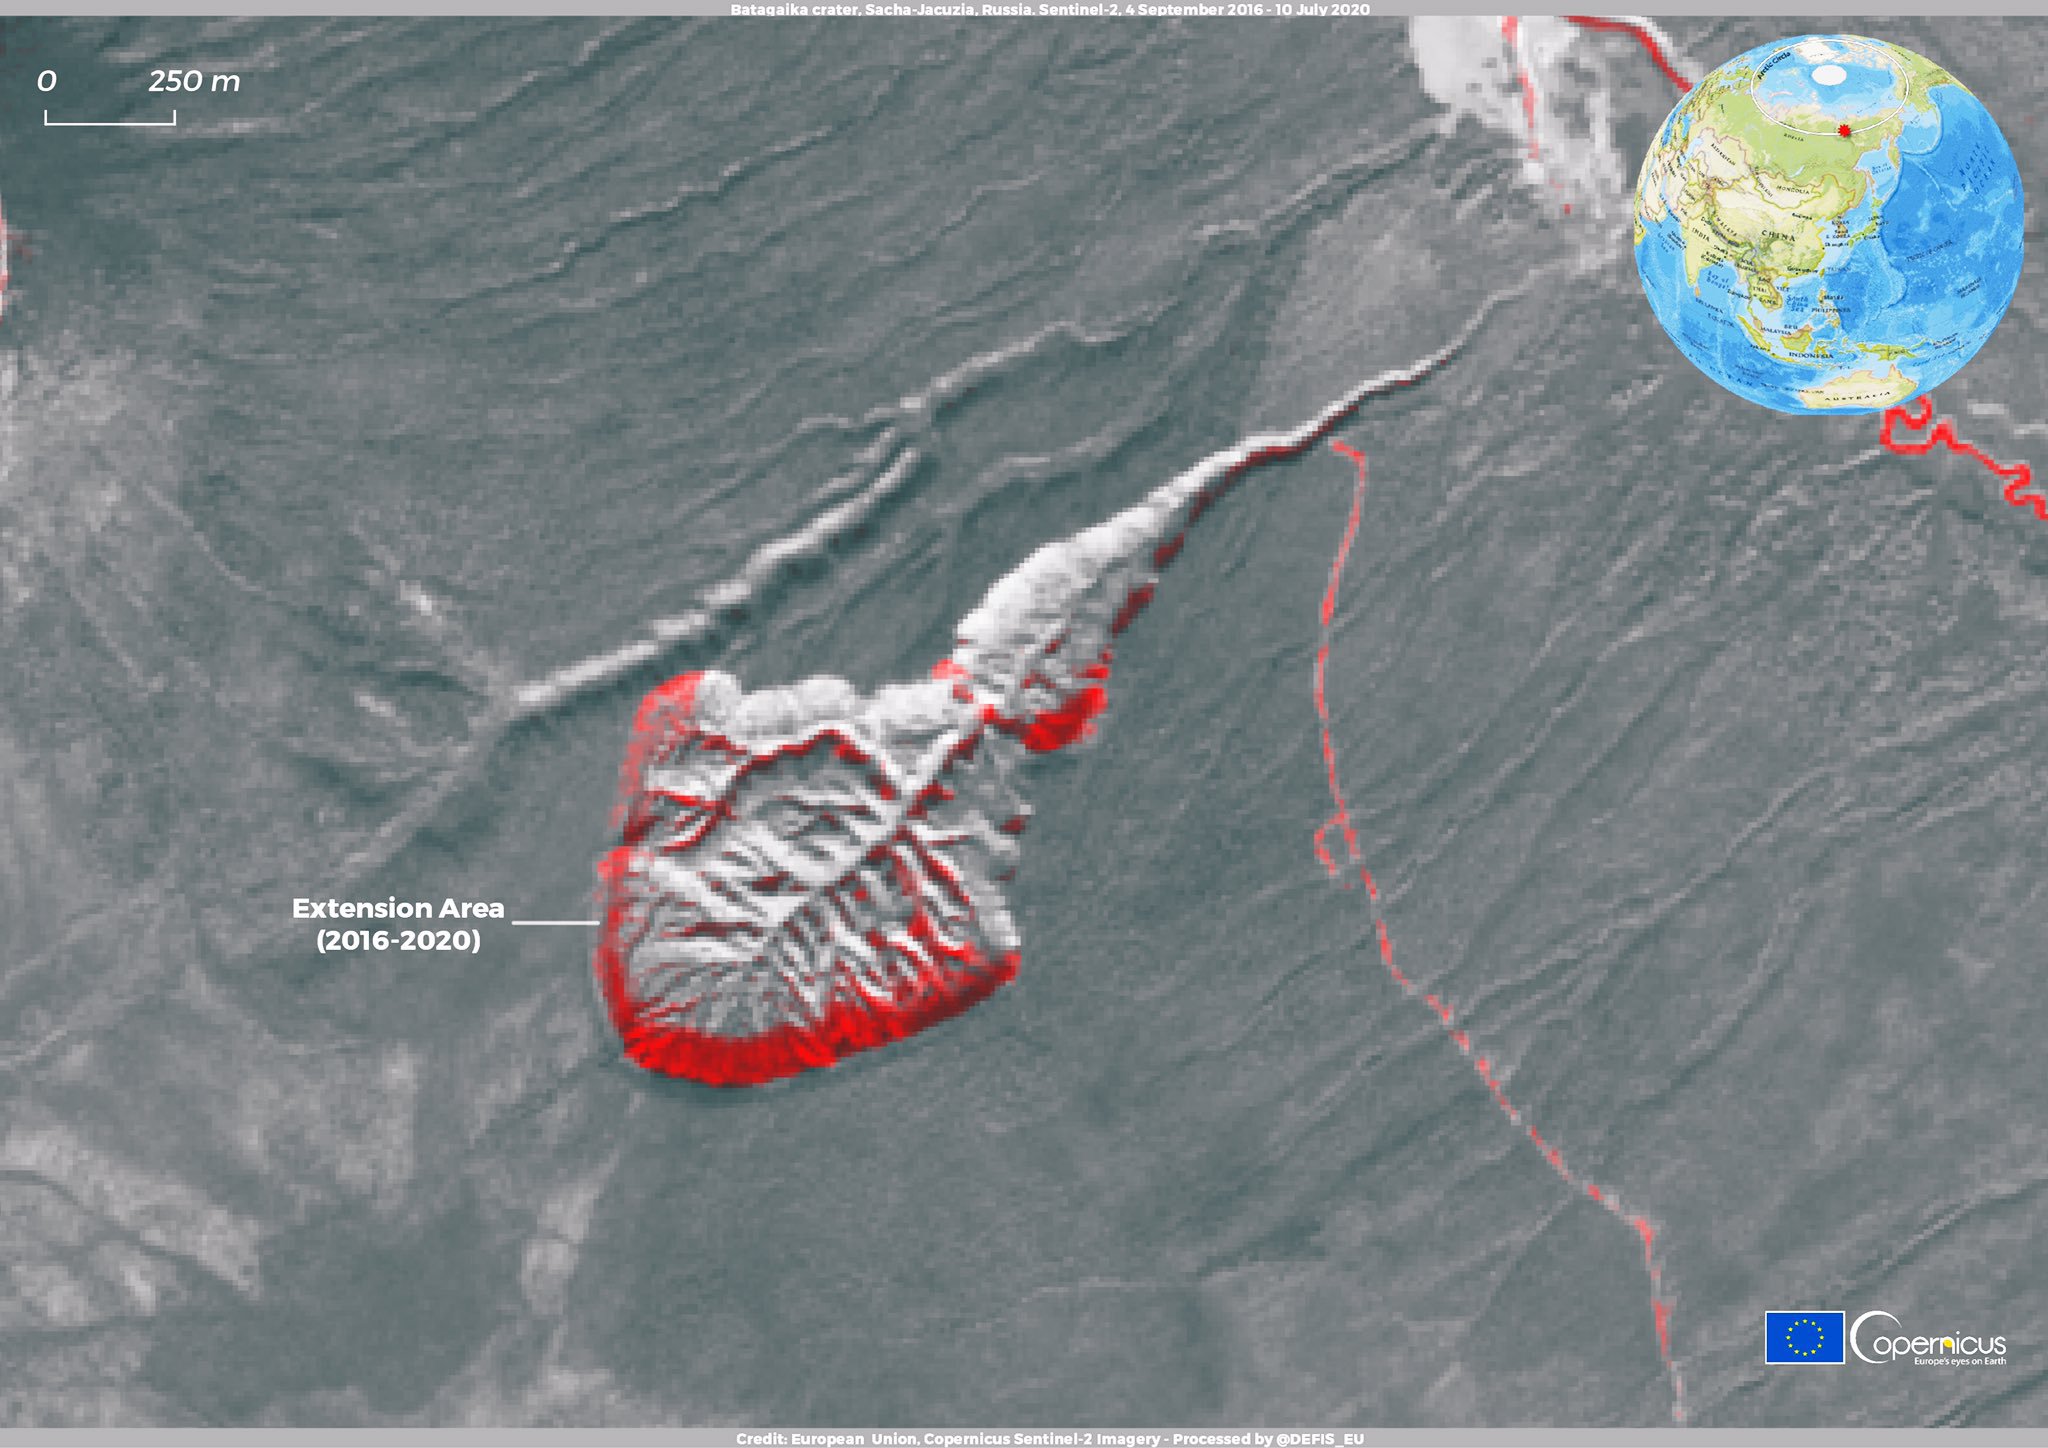 червоним позначено зону розширення кратера